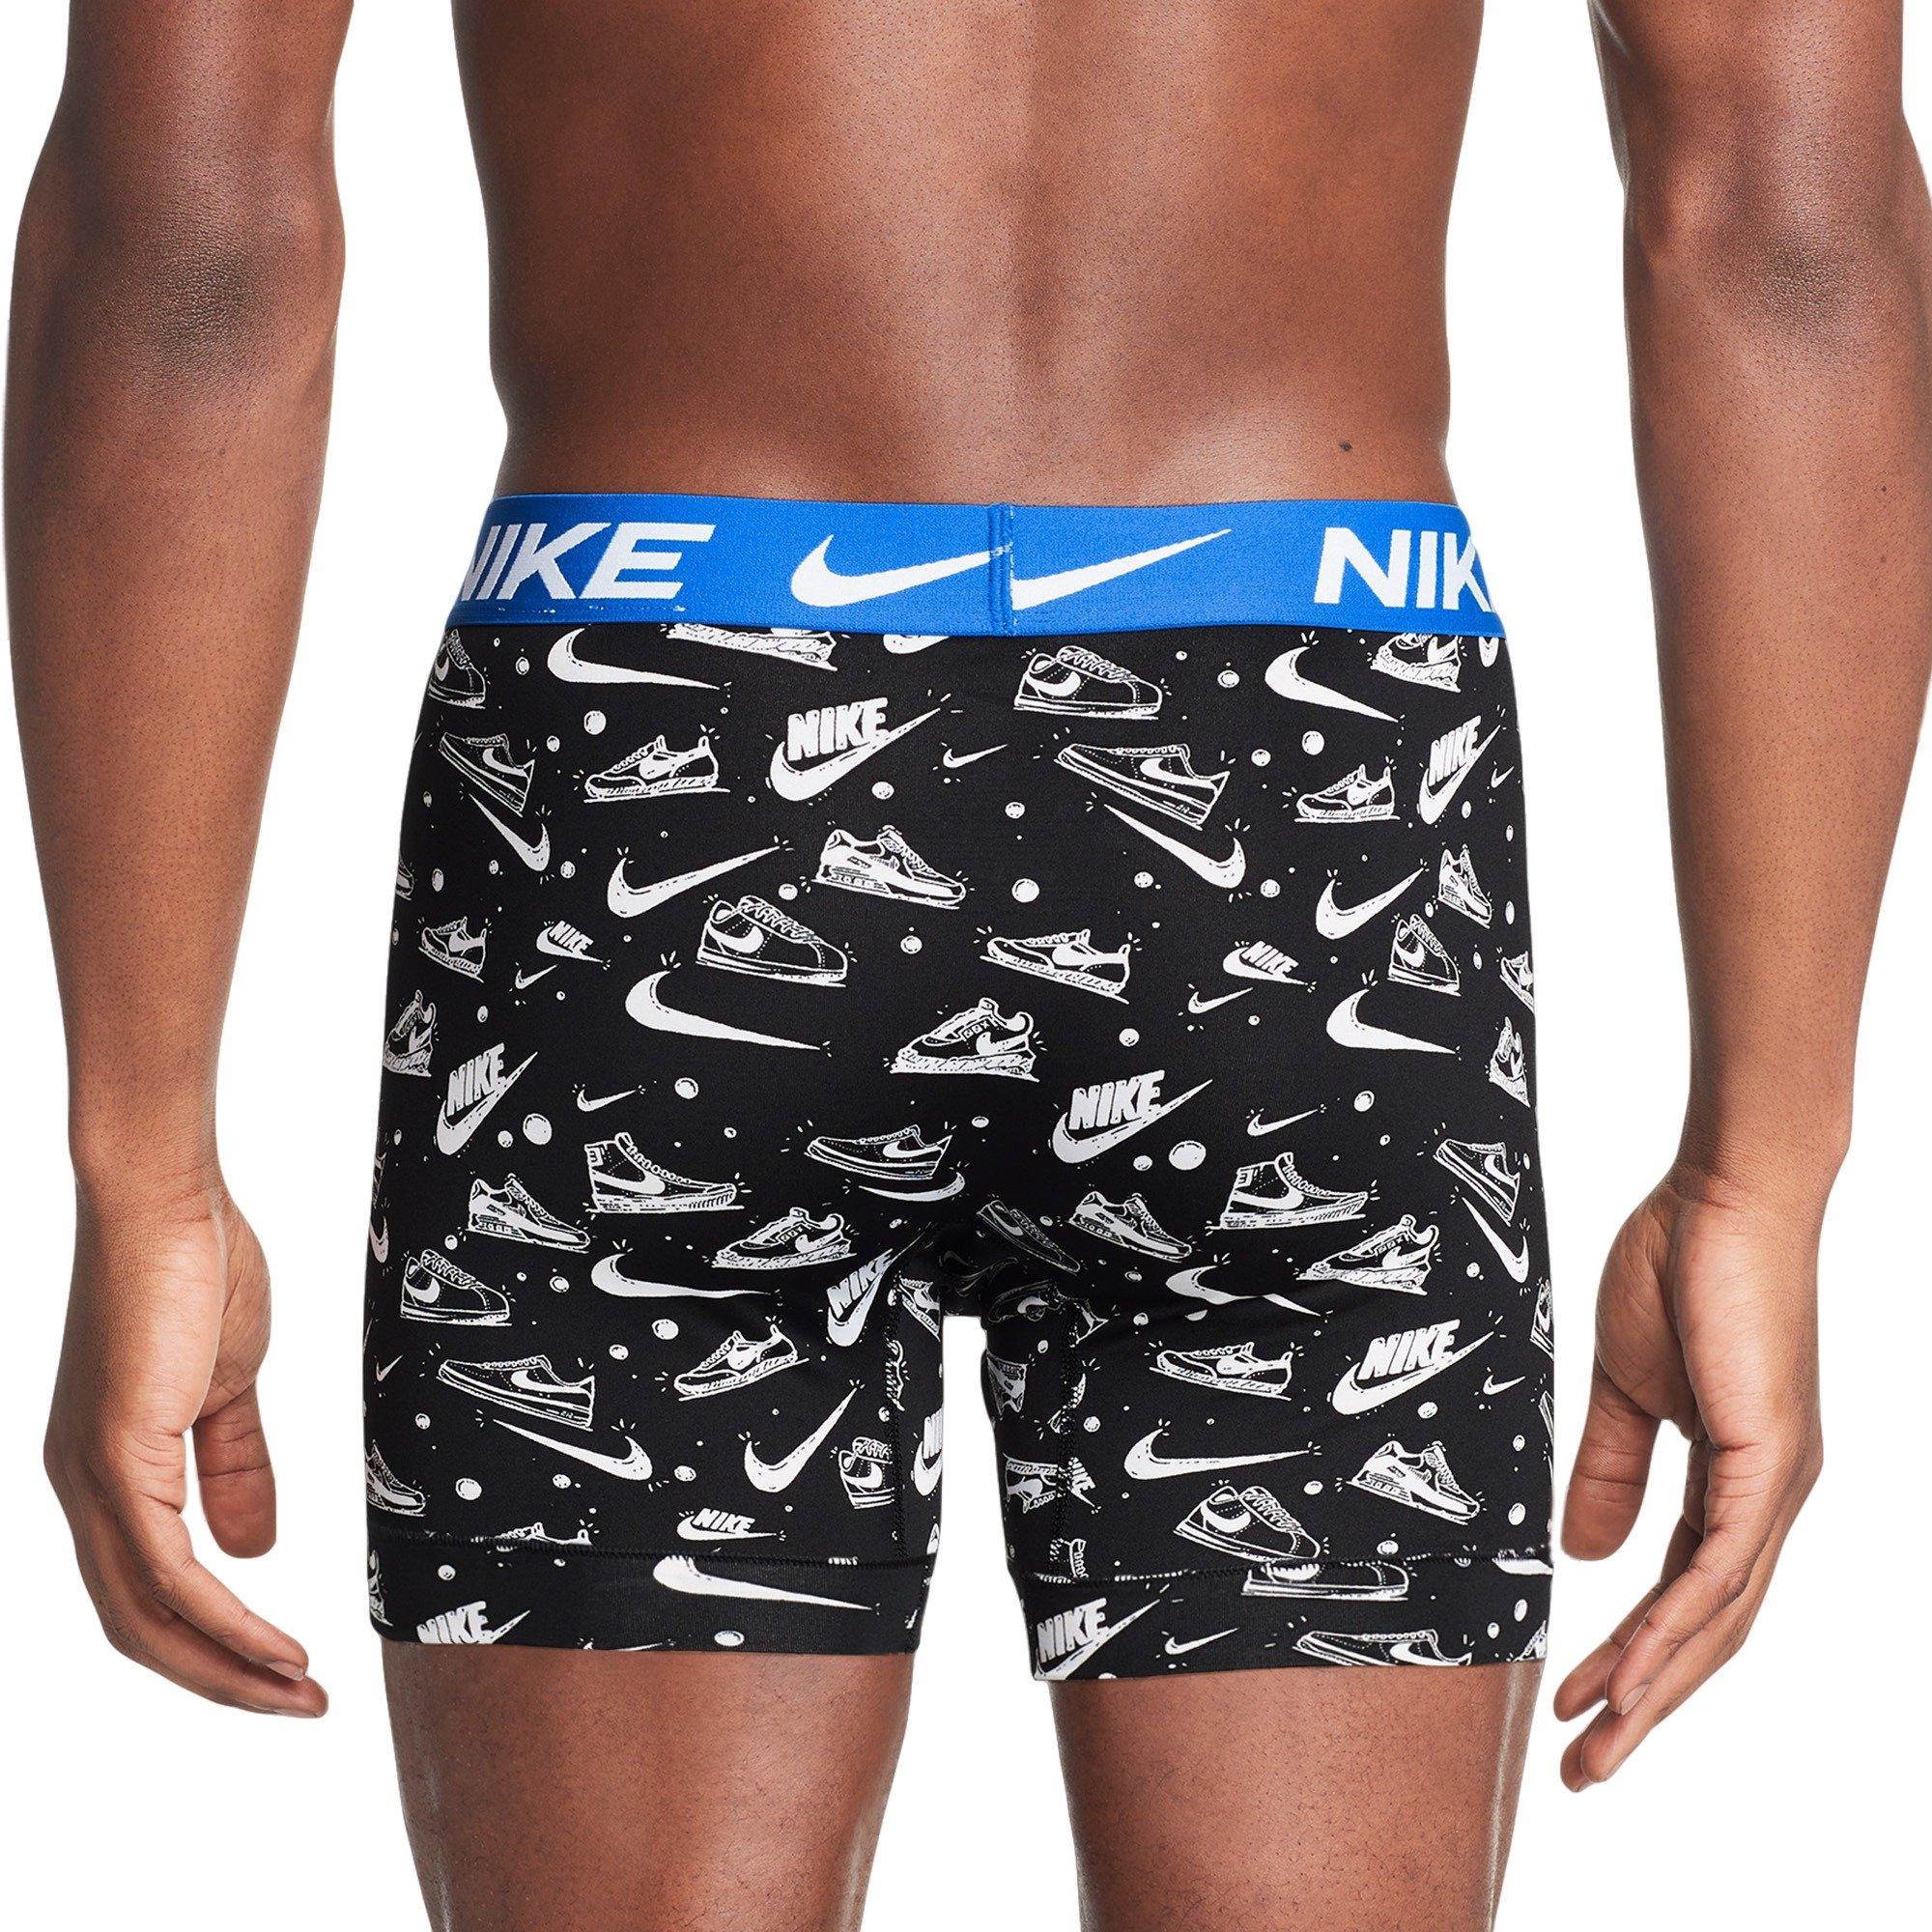 €0 - €50 NikeLab Unlined Underwear Synthetic. Nike IE